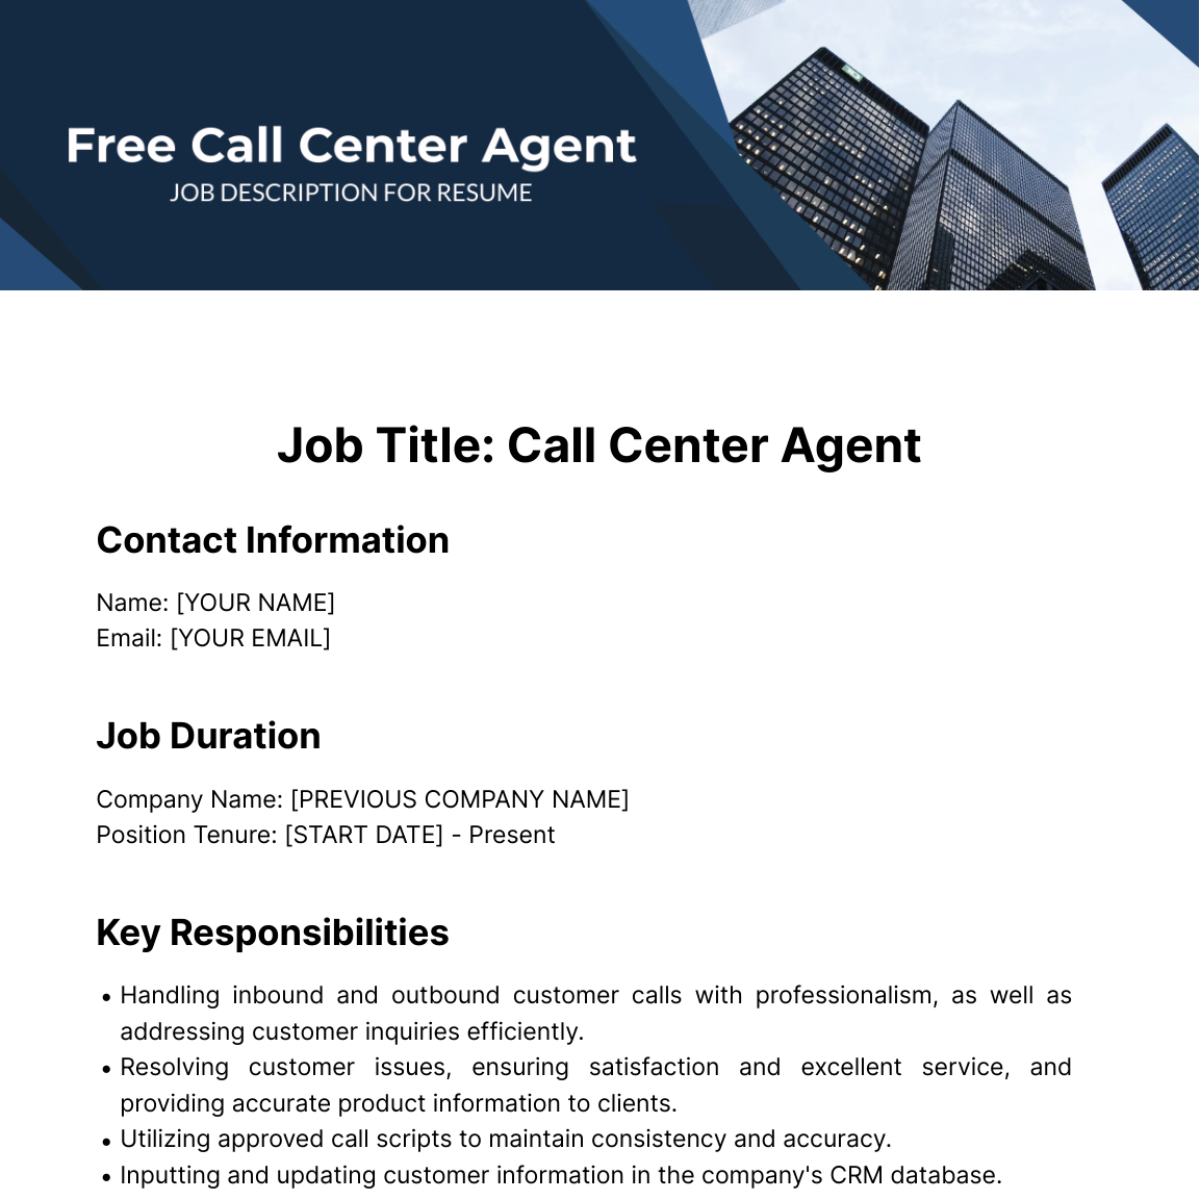 Call Center Agent Job Description for Resume Template